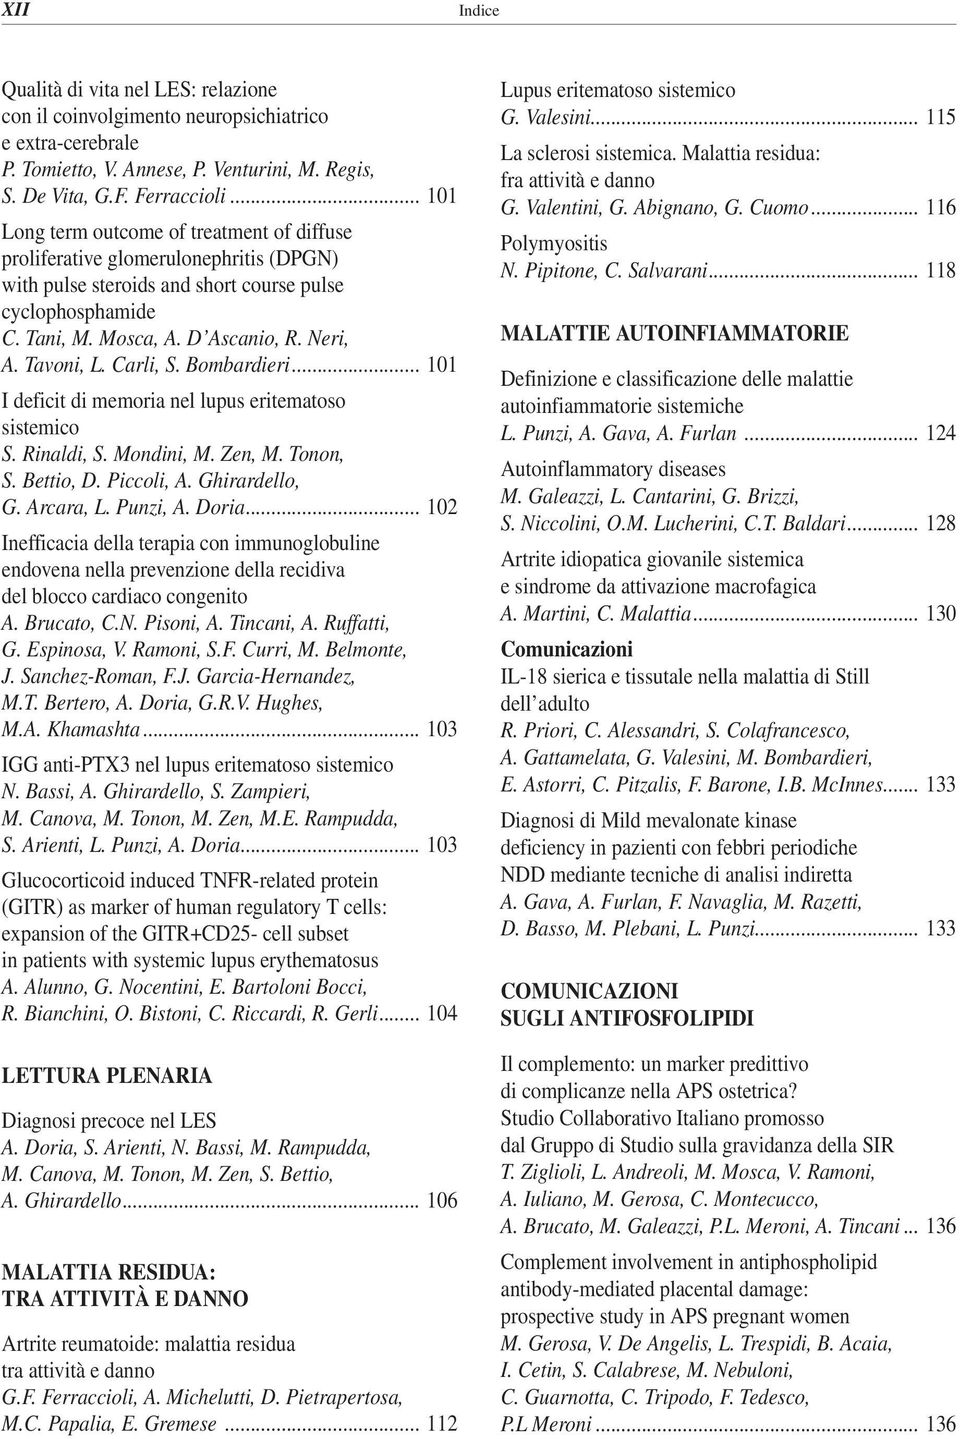 Tavoni, L. Carli, S. Bombardieri... 101 I deficit di memoria nel lupus eritematoso sistemico S. Rinaldi, S. Mondini, M. Zen, M. Tonon, S. Bettio, D. Piccoli, A. Ghirardello, G. Arcara, L. Punzi, A.